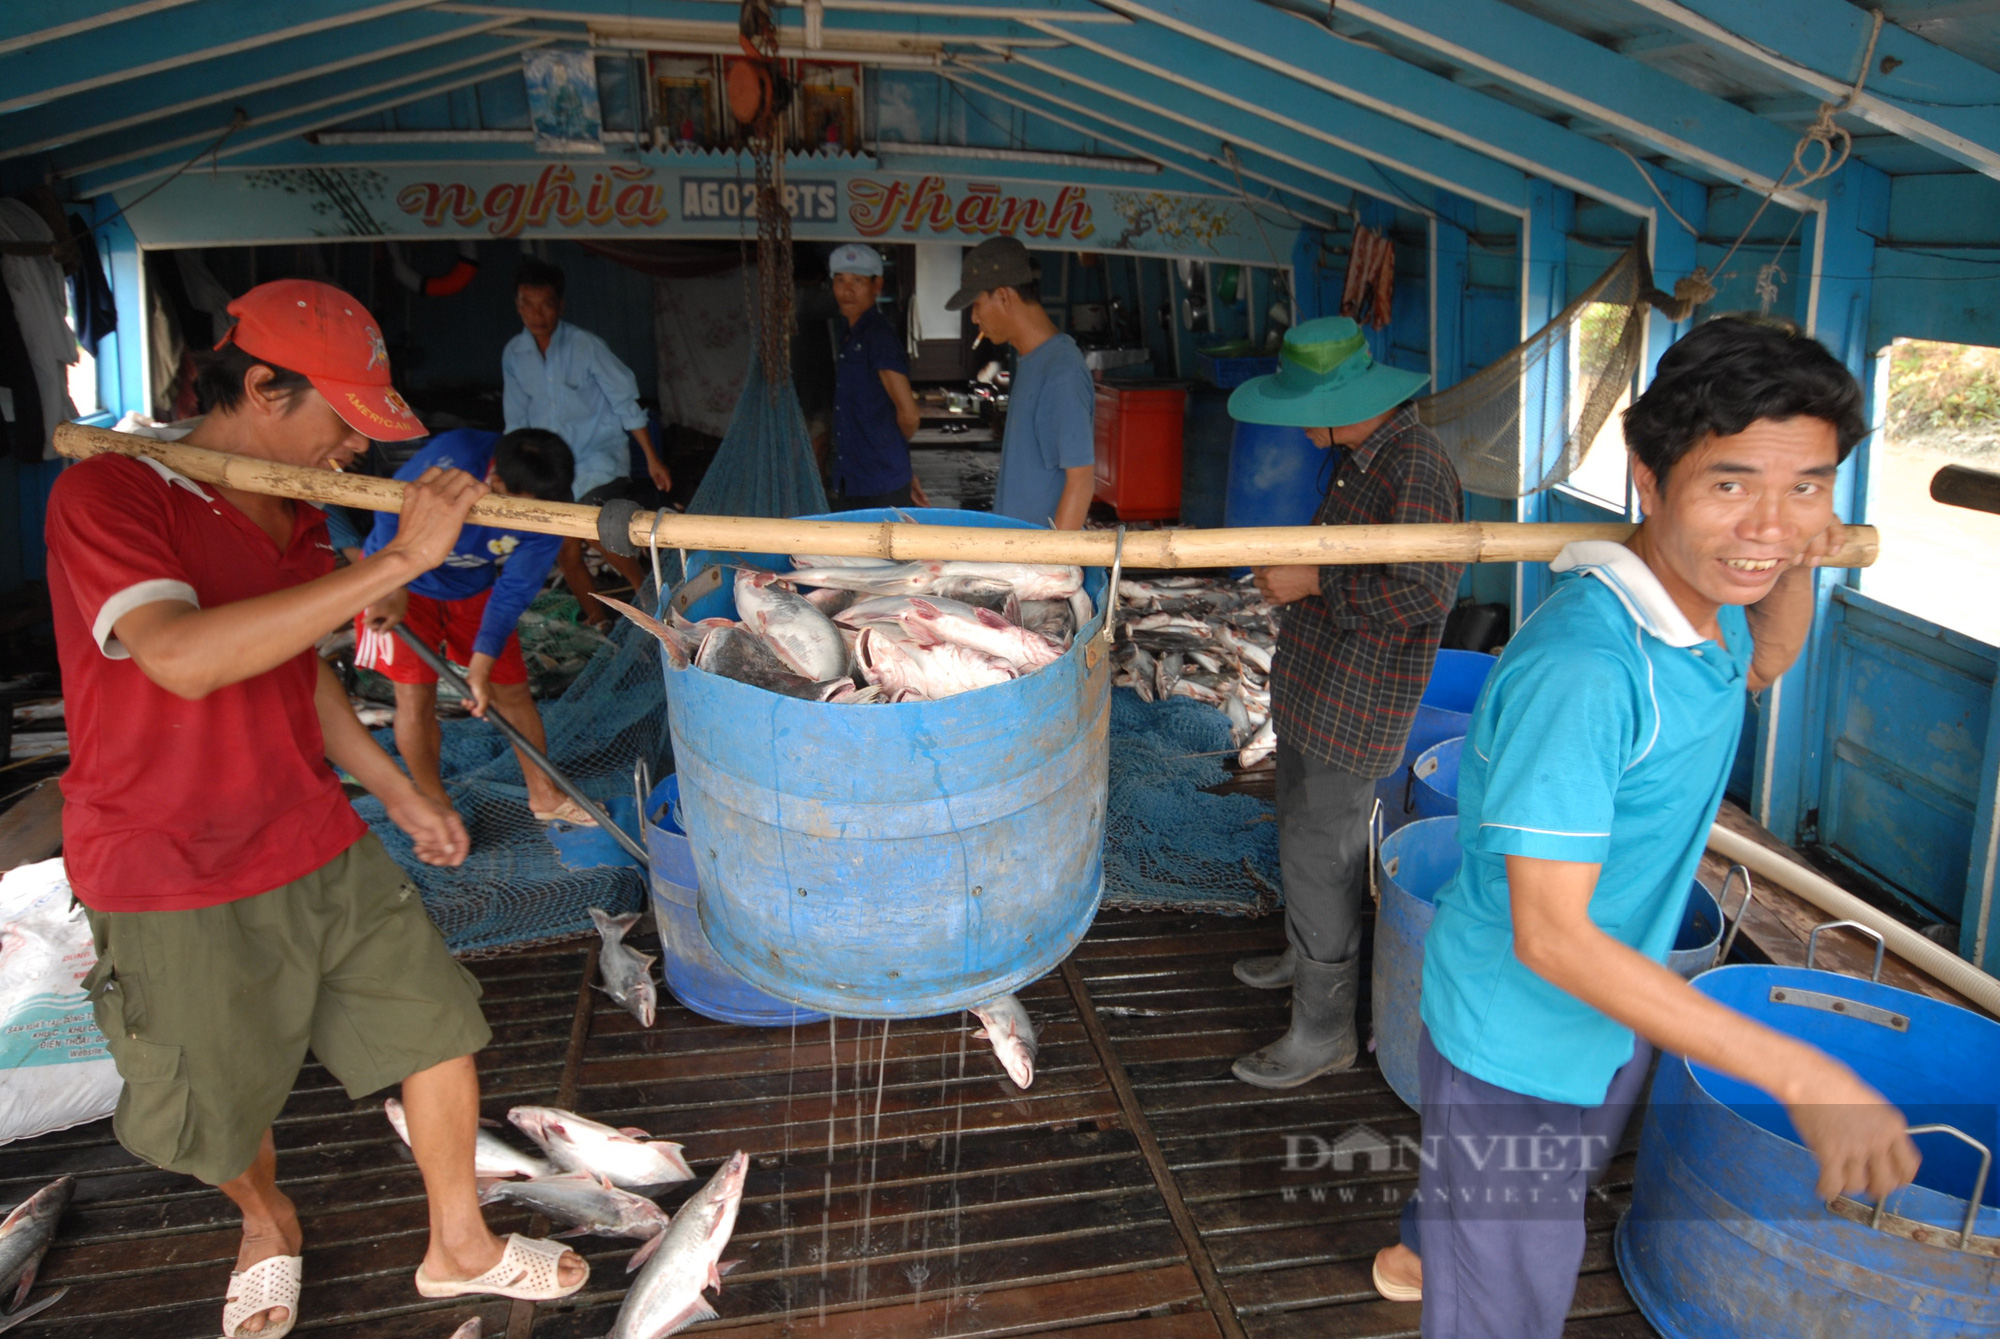 Giá cá tra nguyên liệu xuất khẩu tăng nóng, làng cá tra Sài thành đứng ngoài cuộc chơi - Ảnh 4.